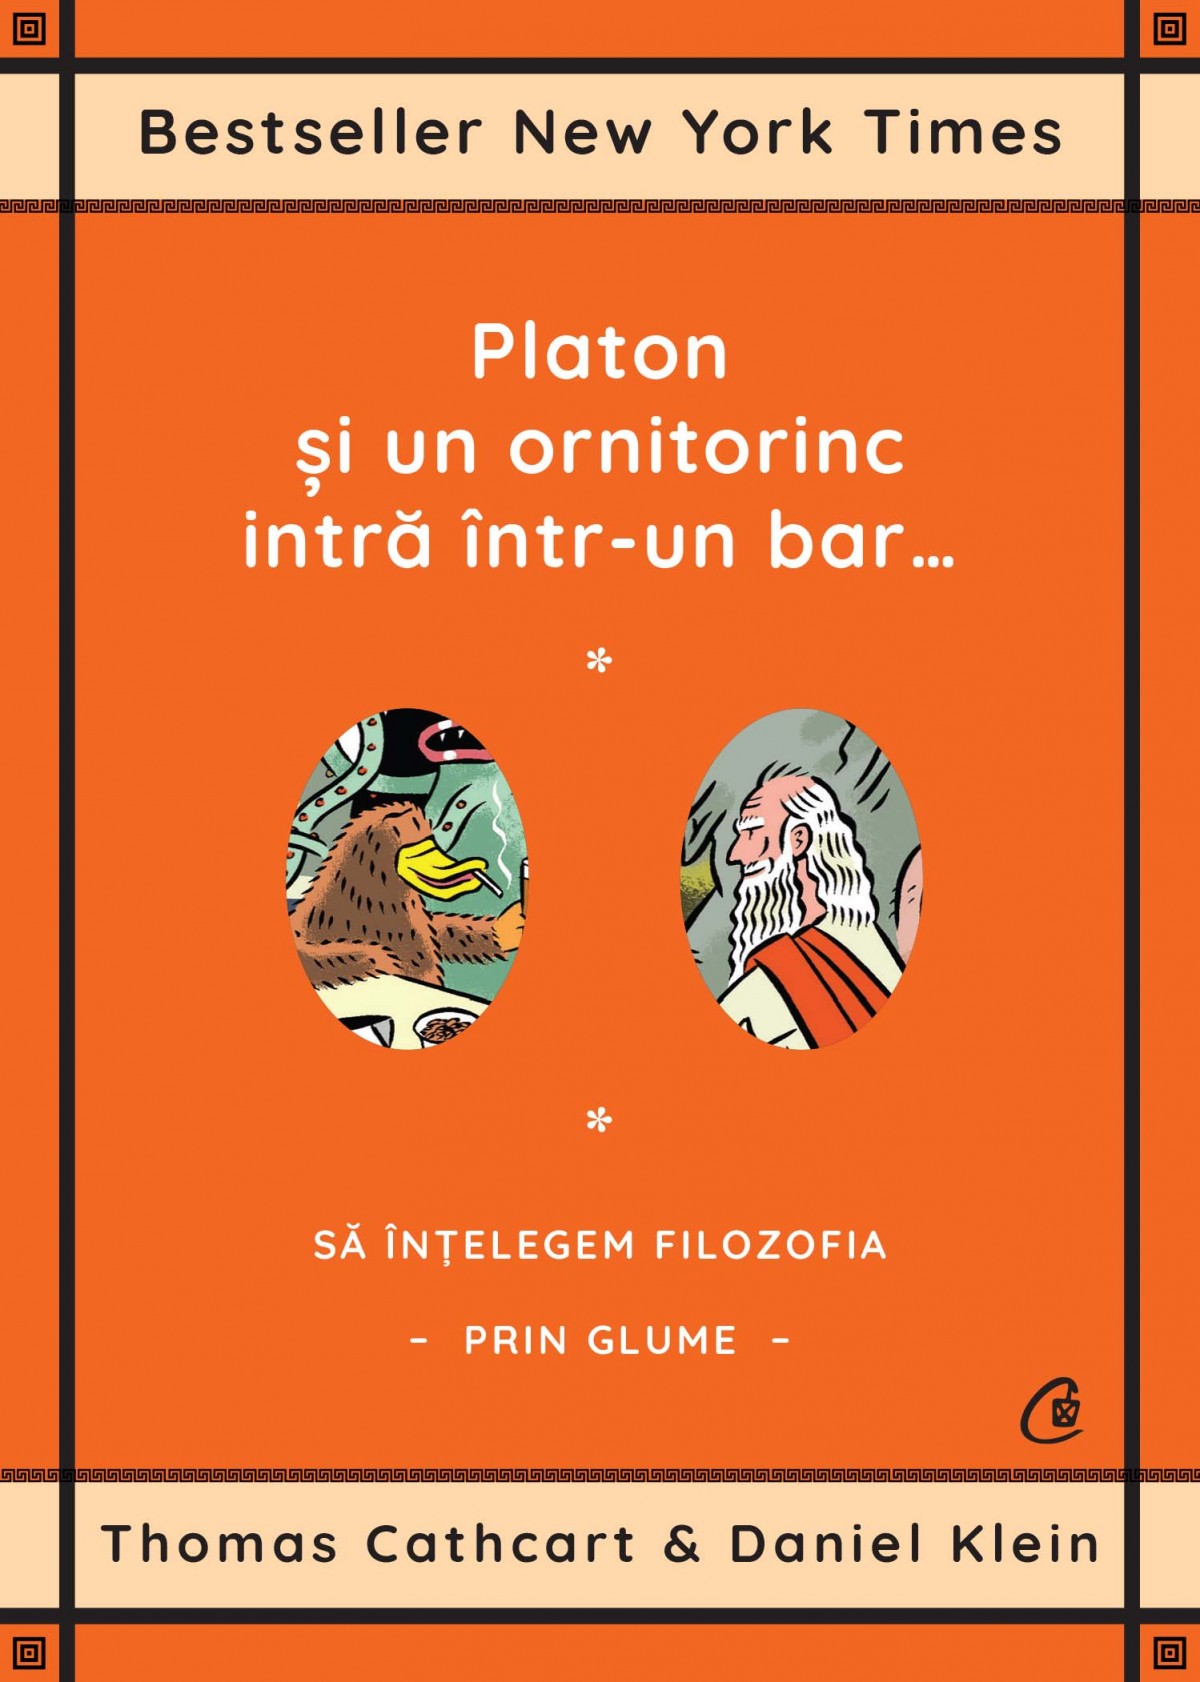 Platon si un ornitorinc intra intr-un bar… | Thomas Cathcart, Daniel Klein Bar